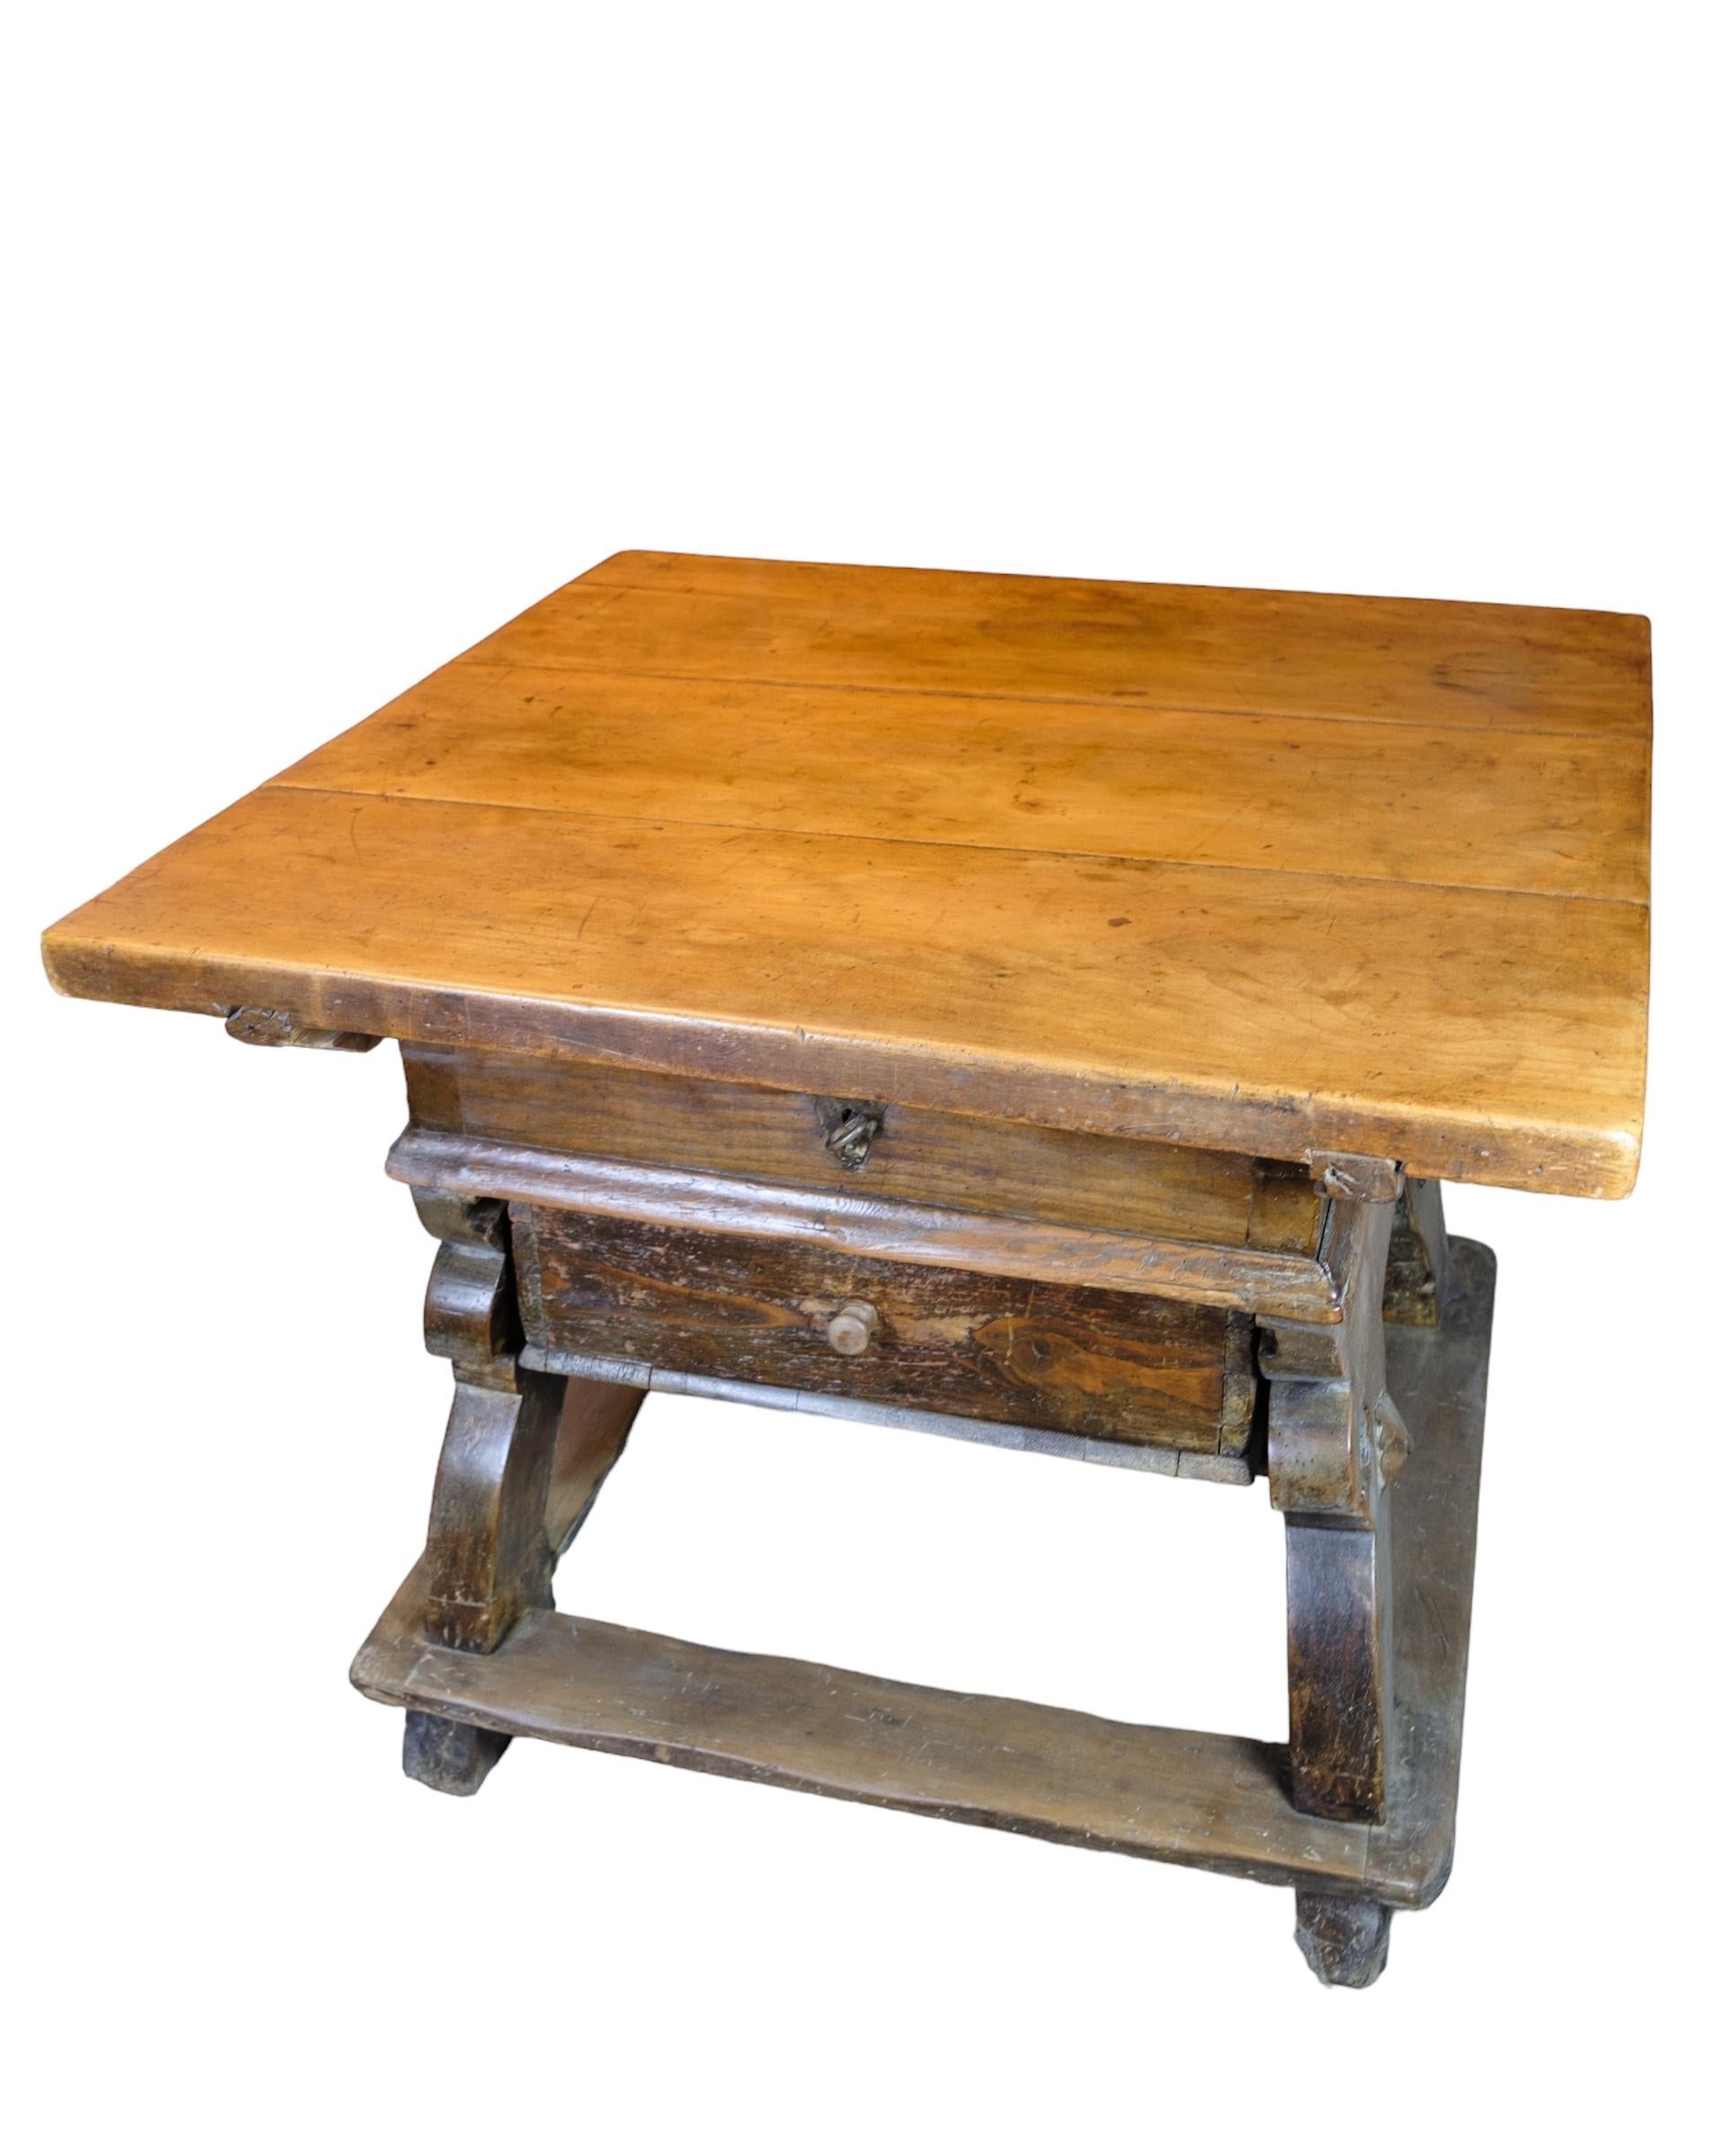 Schweizer Käsetisch aus Eiche mit einem Geheimfach unter der Tischplatte, das von einer Schublade aus den 1720er Jahren verdeckt wird.
Maße in cm: H:76 B:100 T:100